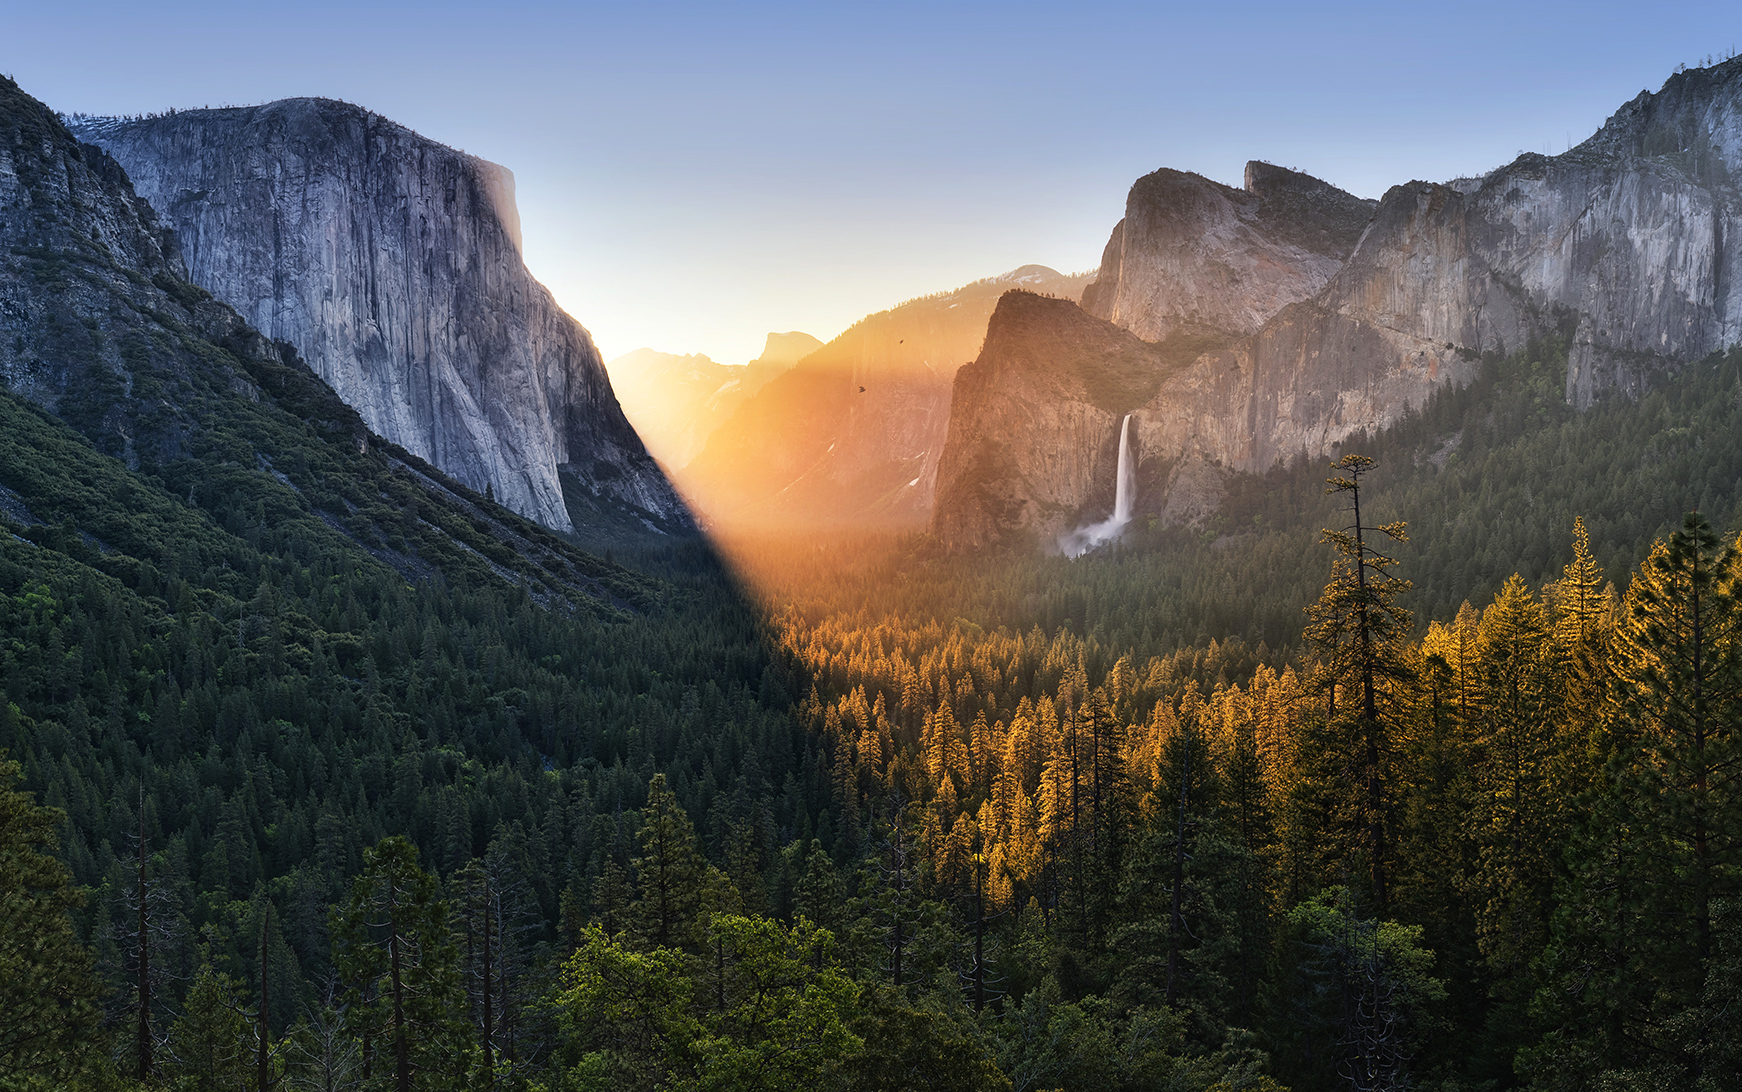 Yosemite Valley at dawn